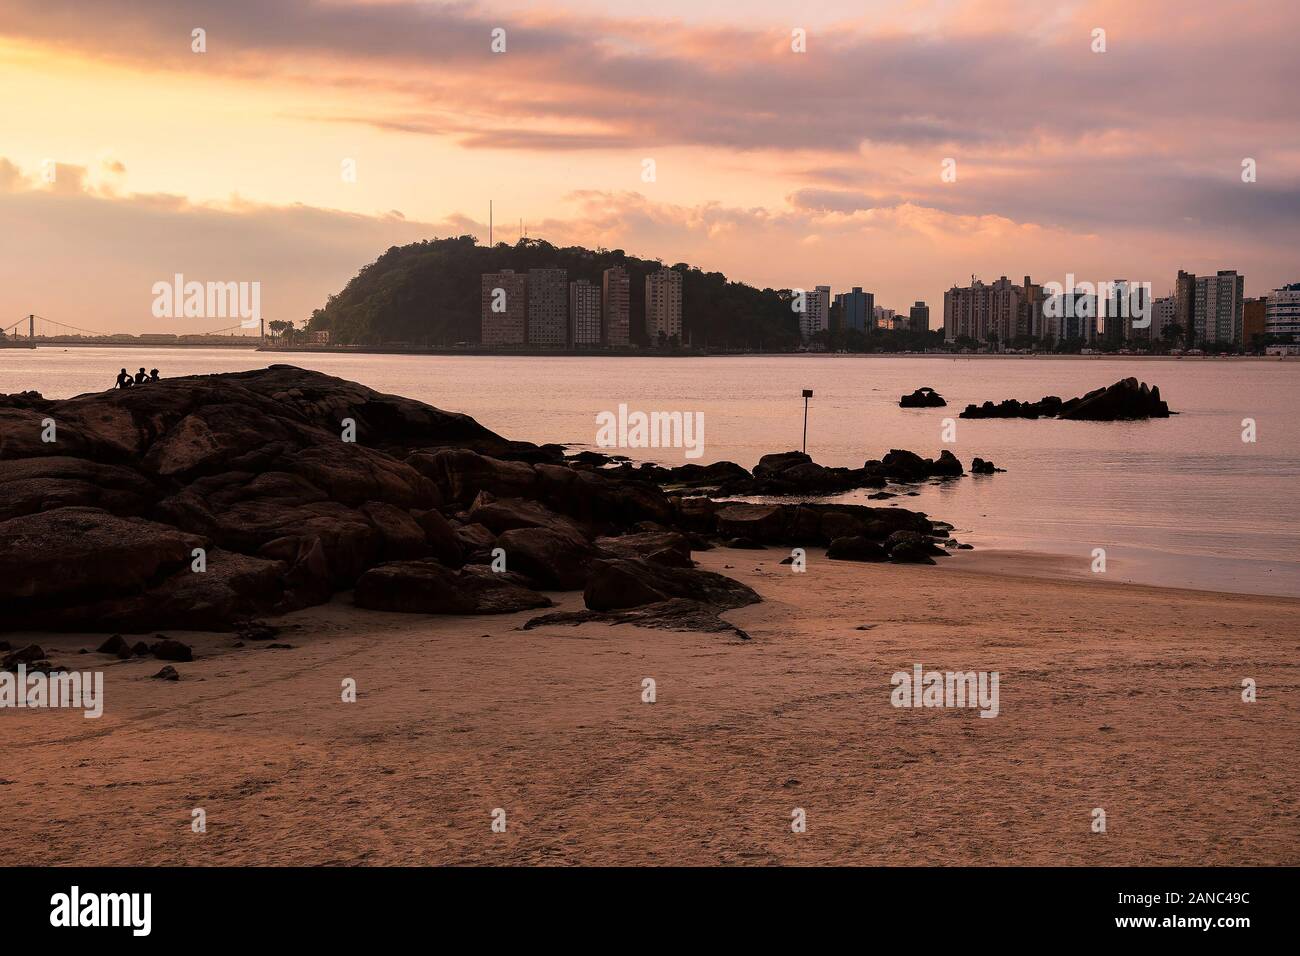 Magnifique coucher de soleil à un Brésilien de la côte Paulista. Photo prise à Praia dos Milionarios, les millionnaires beach en anglais - Sao Vicente SP Braz Banque D'Images